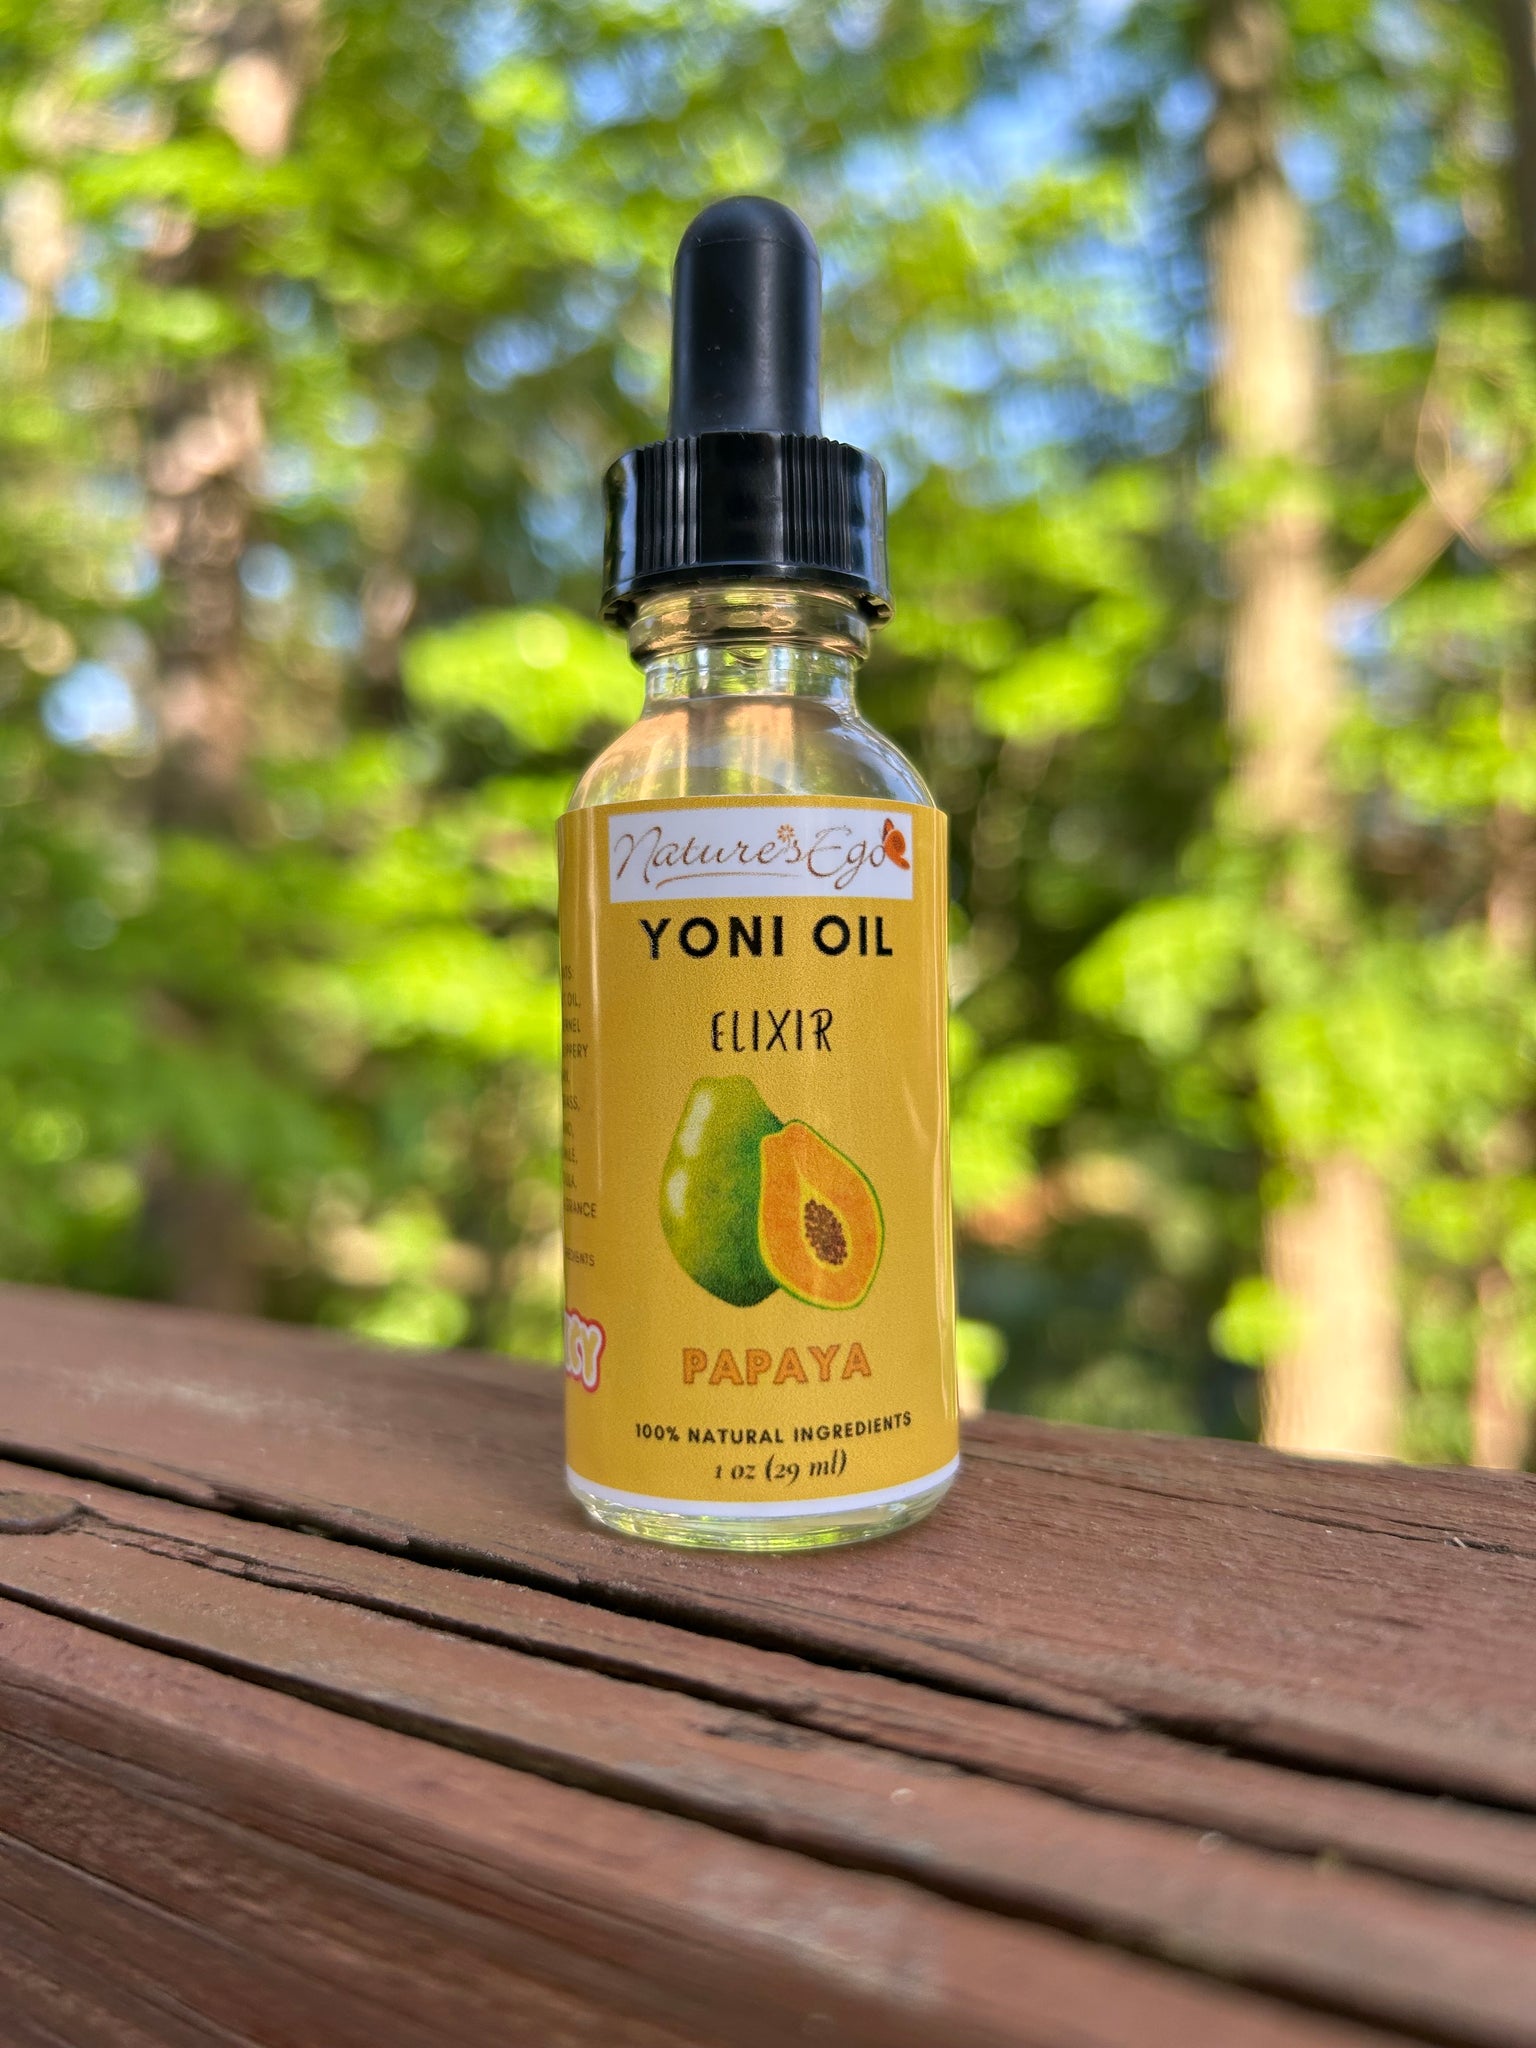 Yoni Oil Elixir – NaturesEgo